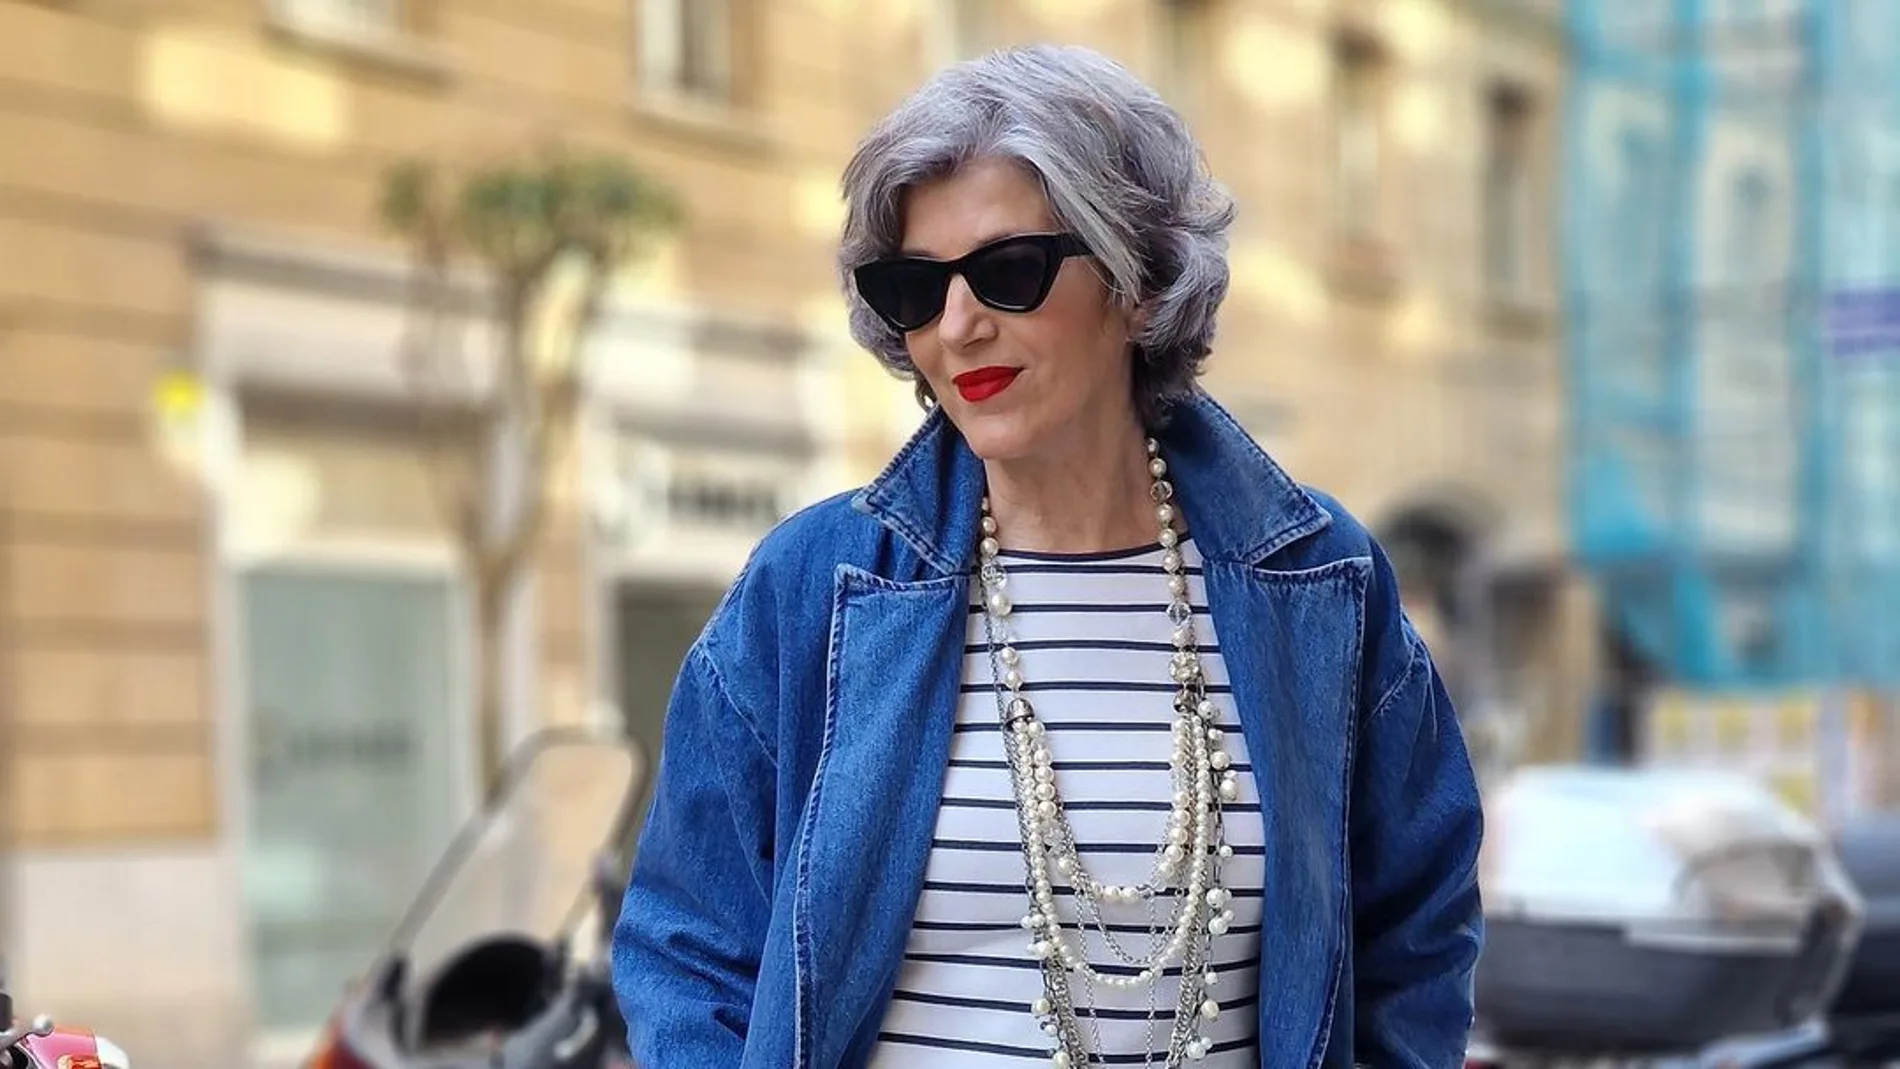 MODA Y ESTILO A LOS 50 AÑOS  moda, moda estilo, moda para mujer